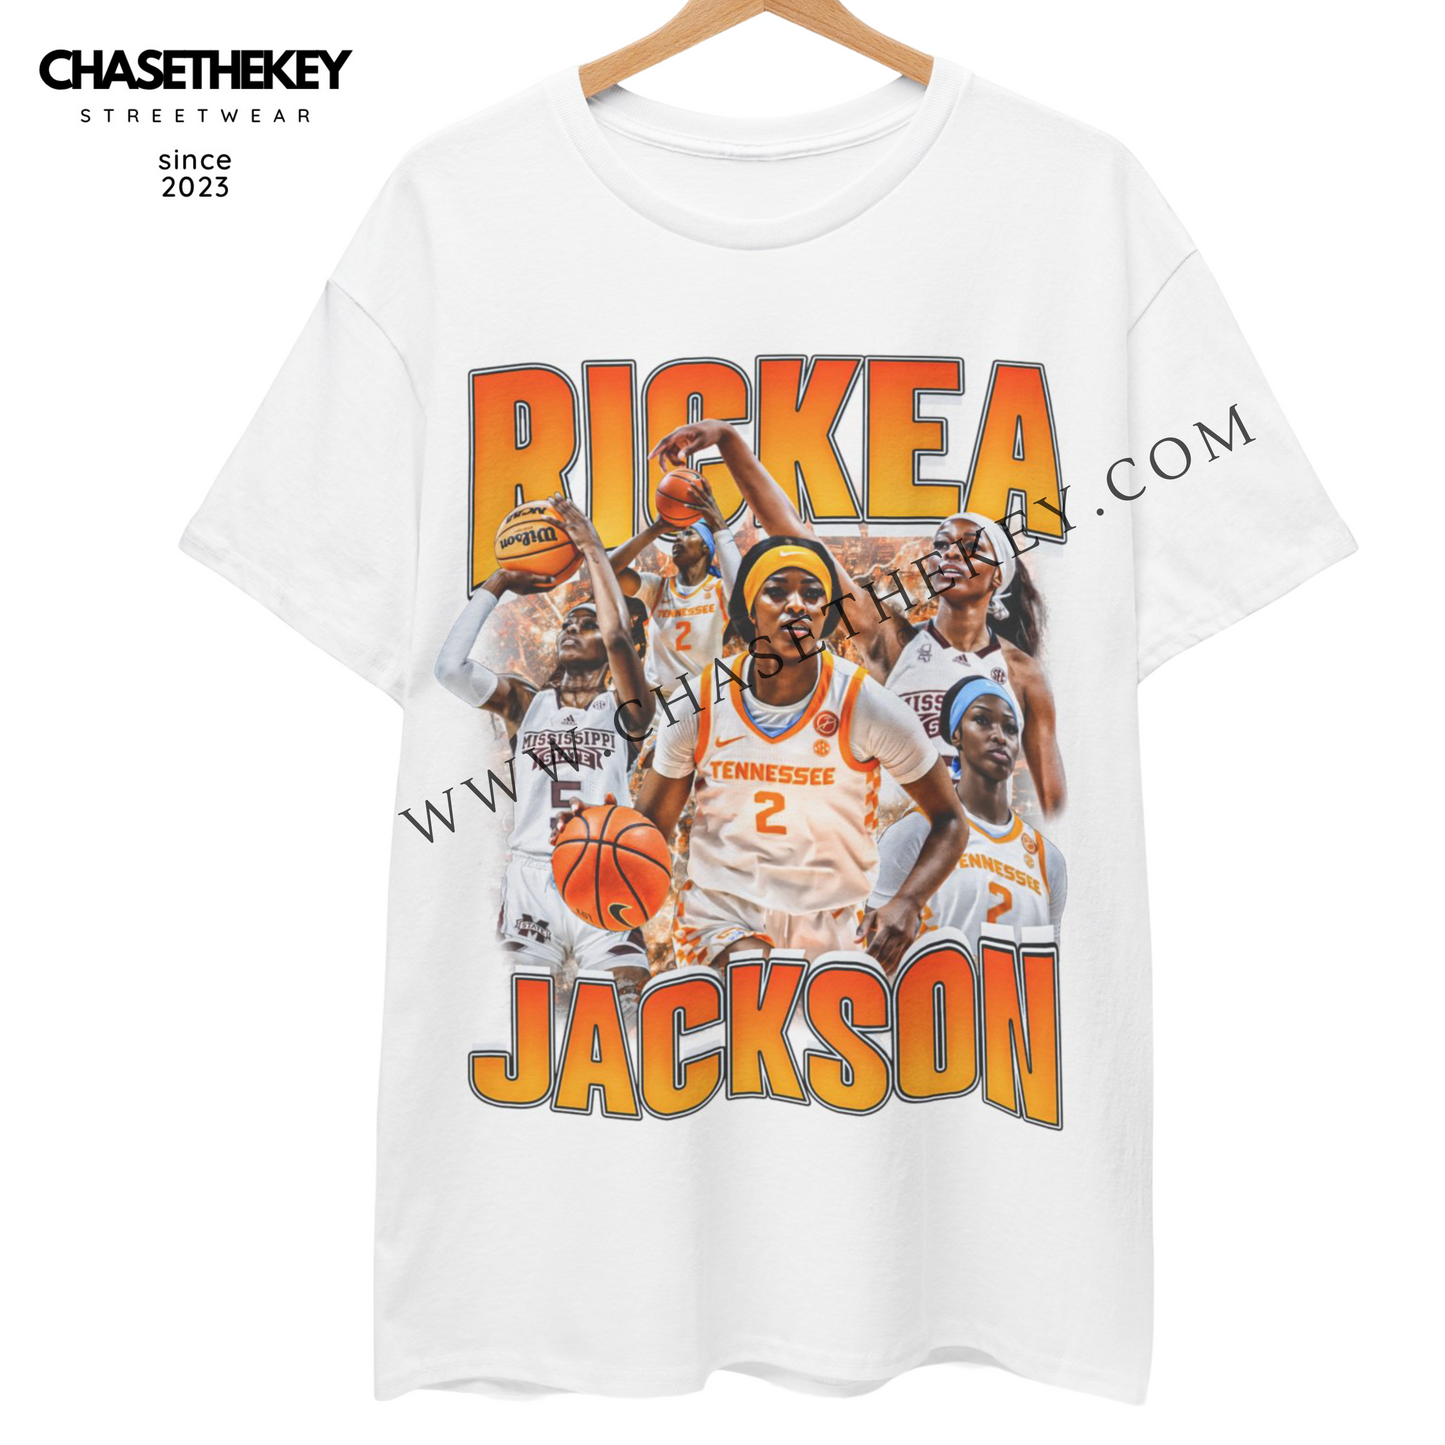 Rickea Jackson Shirt